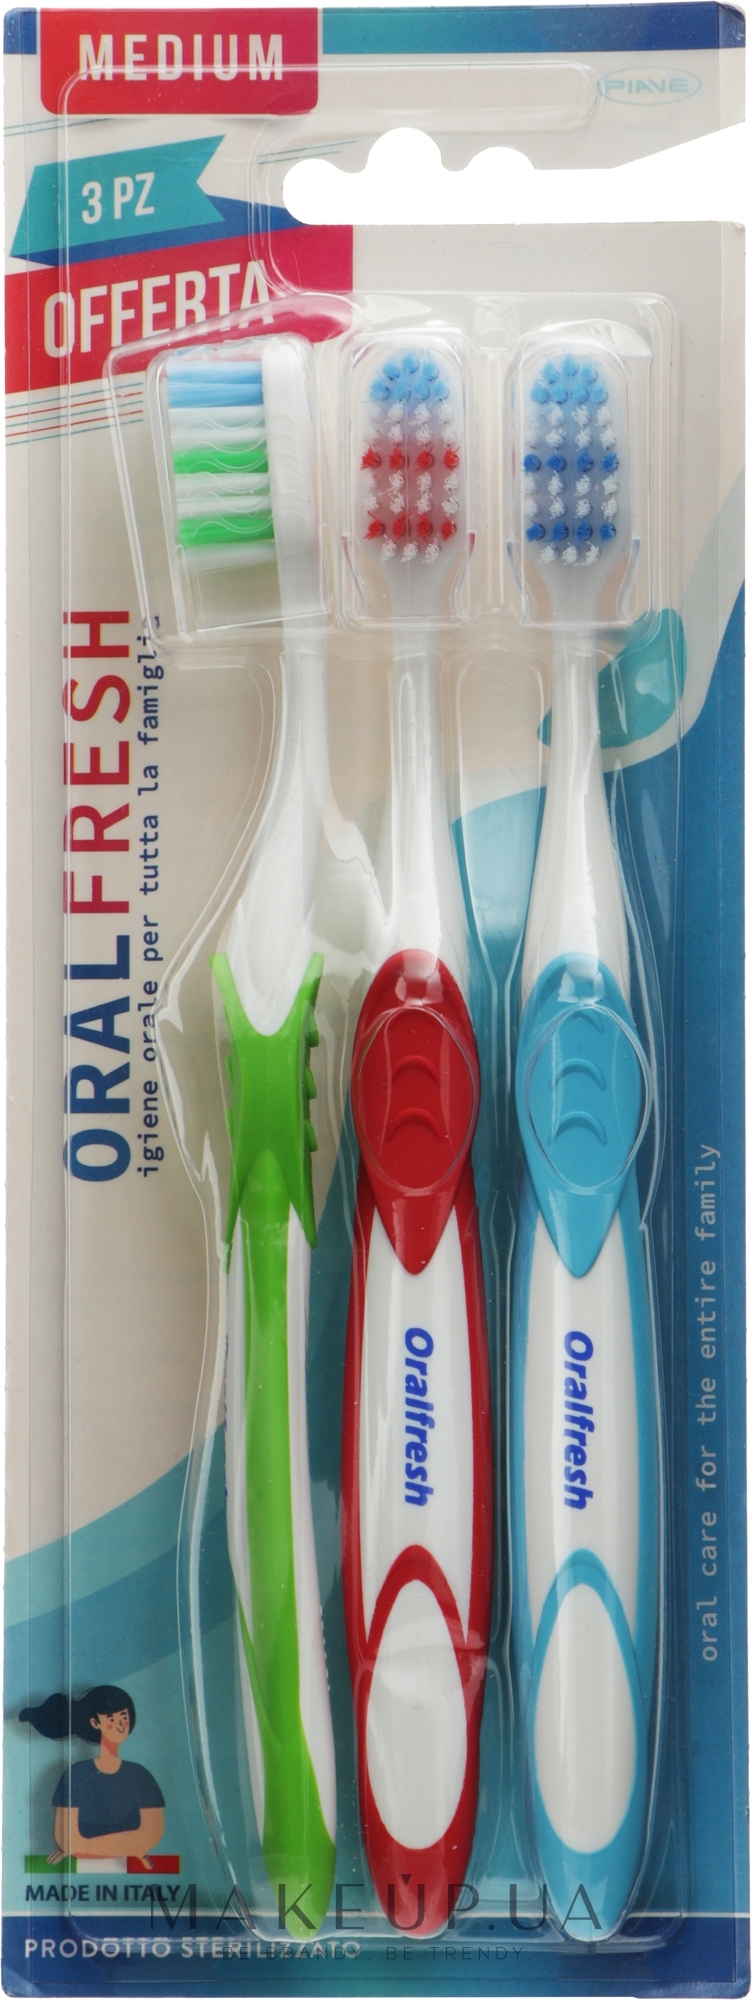 Зубная щетка "Oral Fresh" средней жесткости, 3 шт. - Piave Expertise — фото 3шт